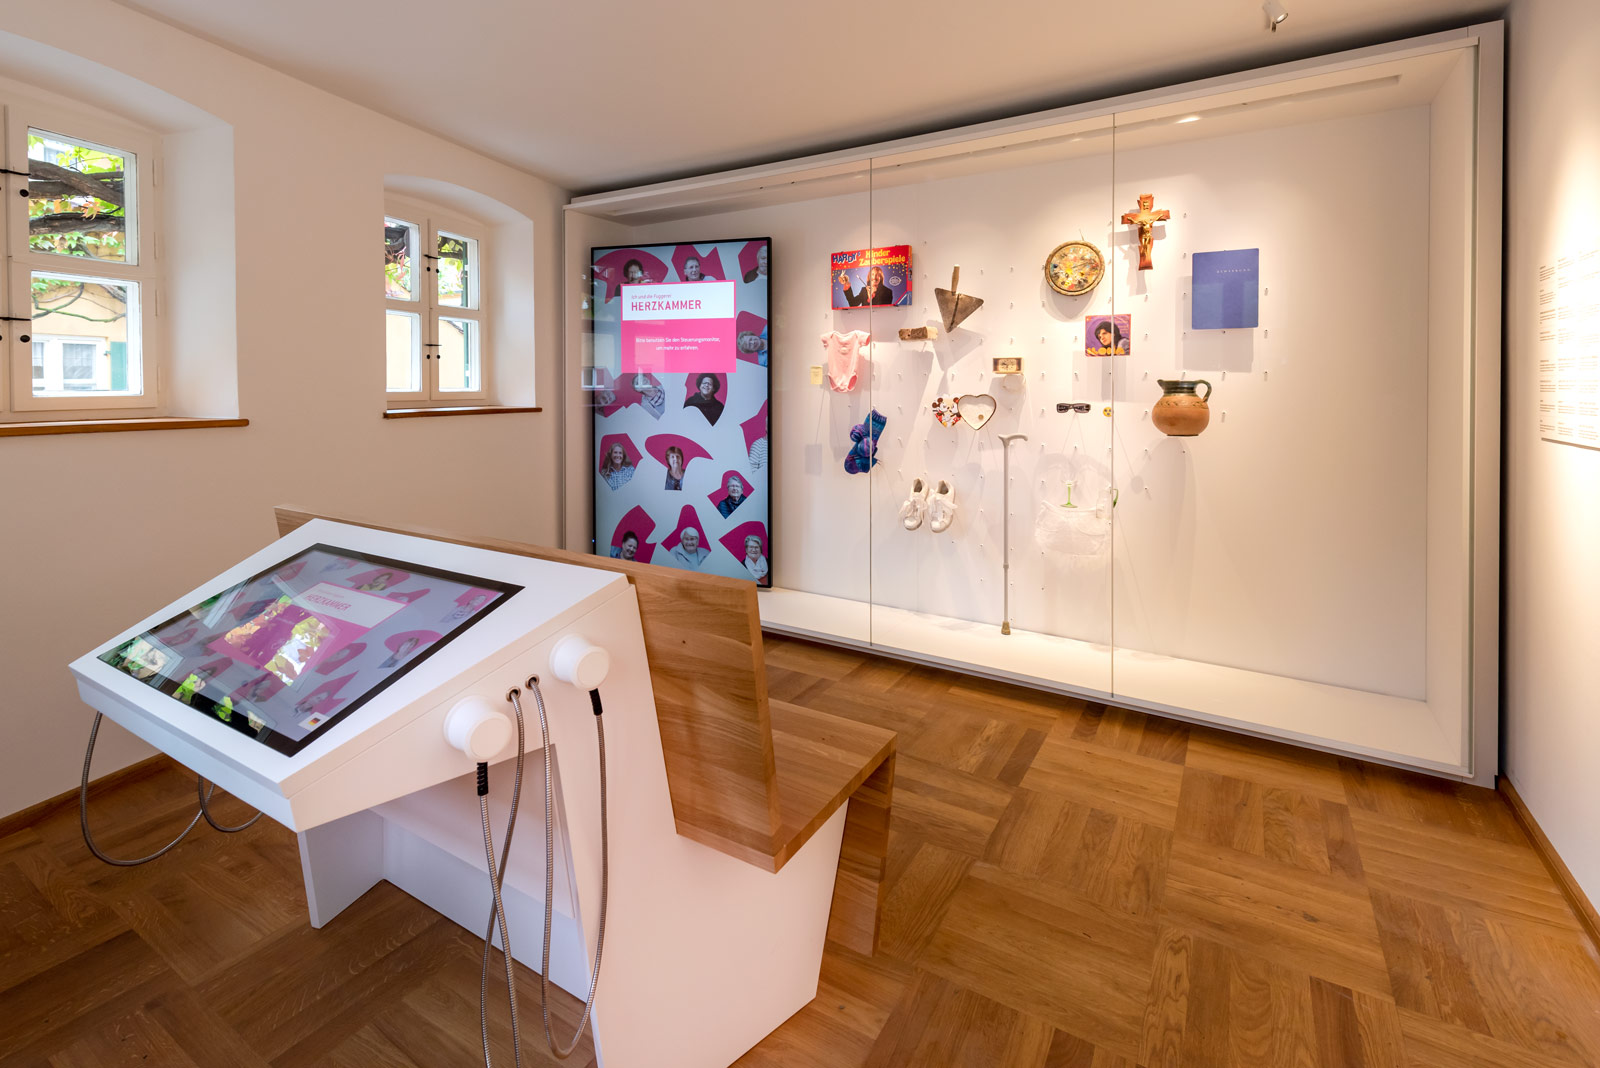 Das Referenzbild für Ausstellungsgestaltung aus der Dauerausstellung Museum der Bewohner zeigt eine Vitrine und eine Medienstation mit Touchscreen